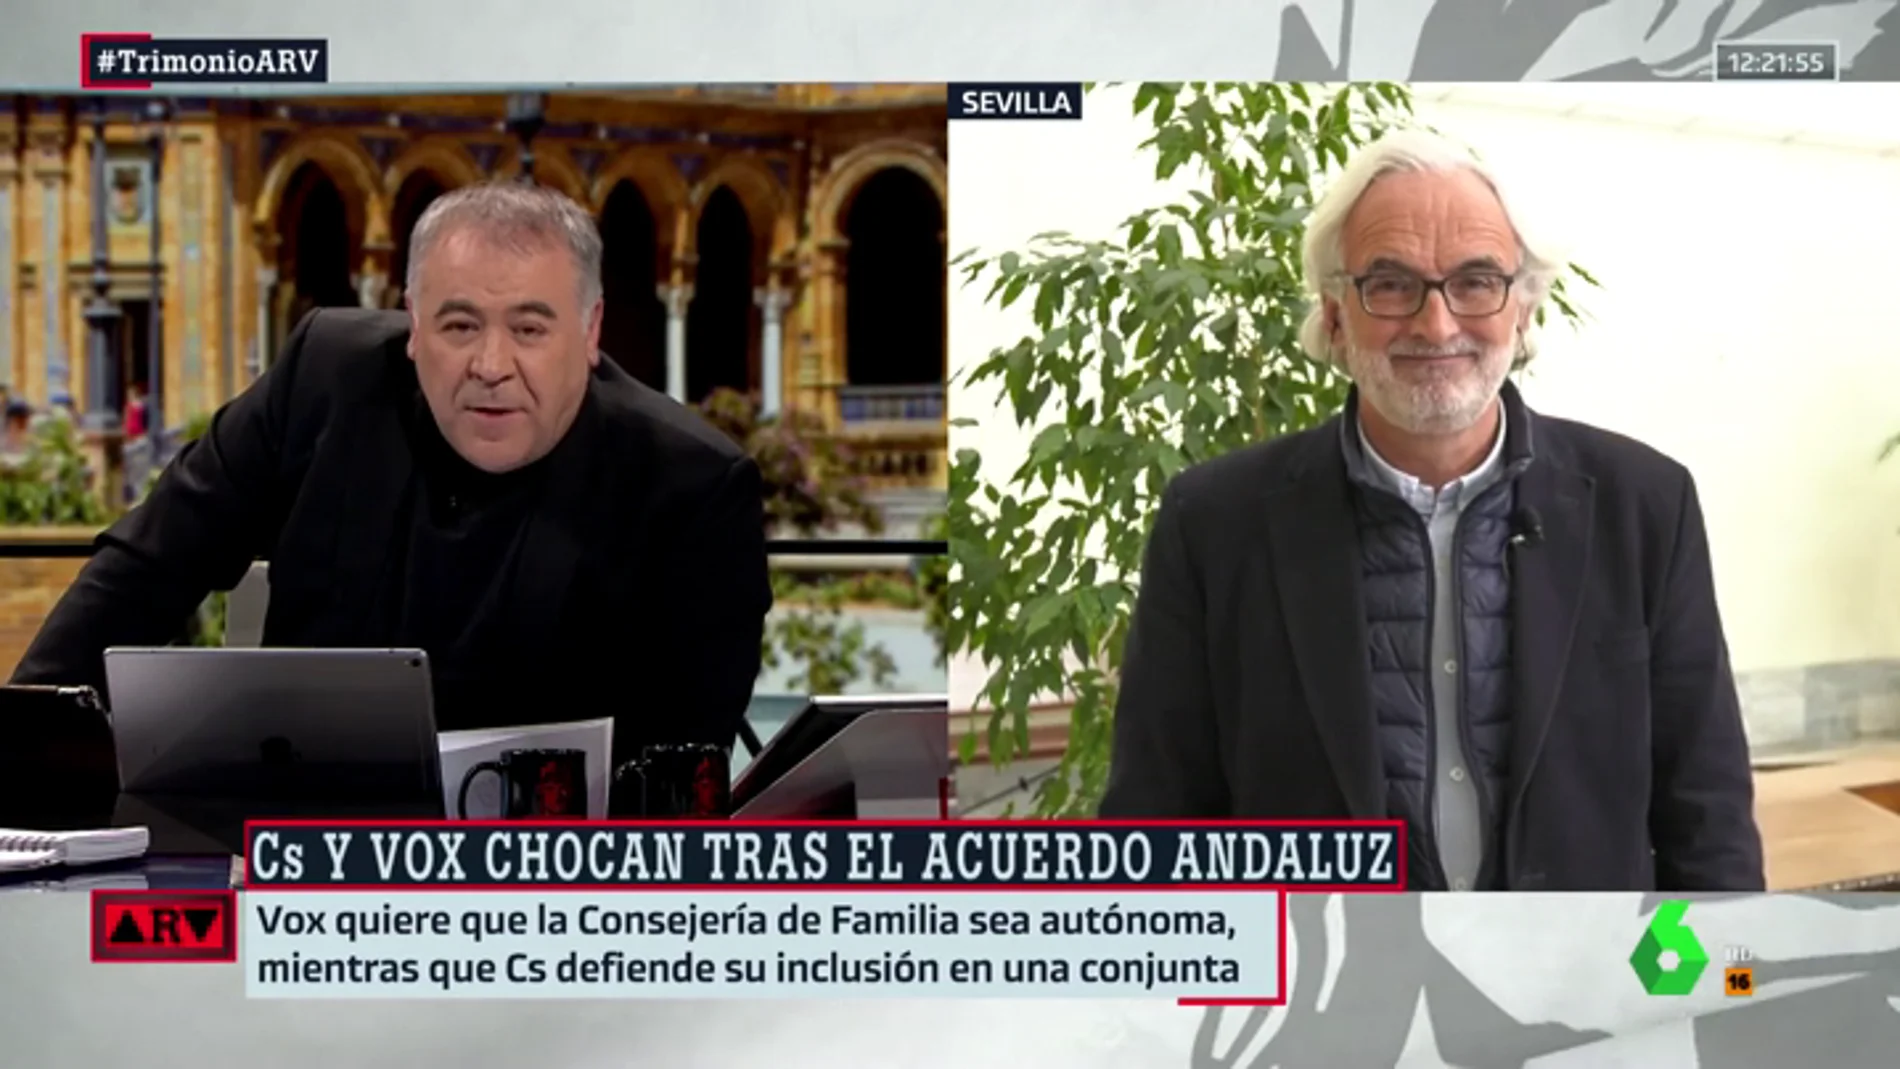 Álvarez-Ossorio: "Ciudadanos y PP se van a dejar arrastrar por el discurso de Vox. Es un problema grave"